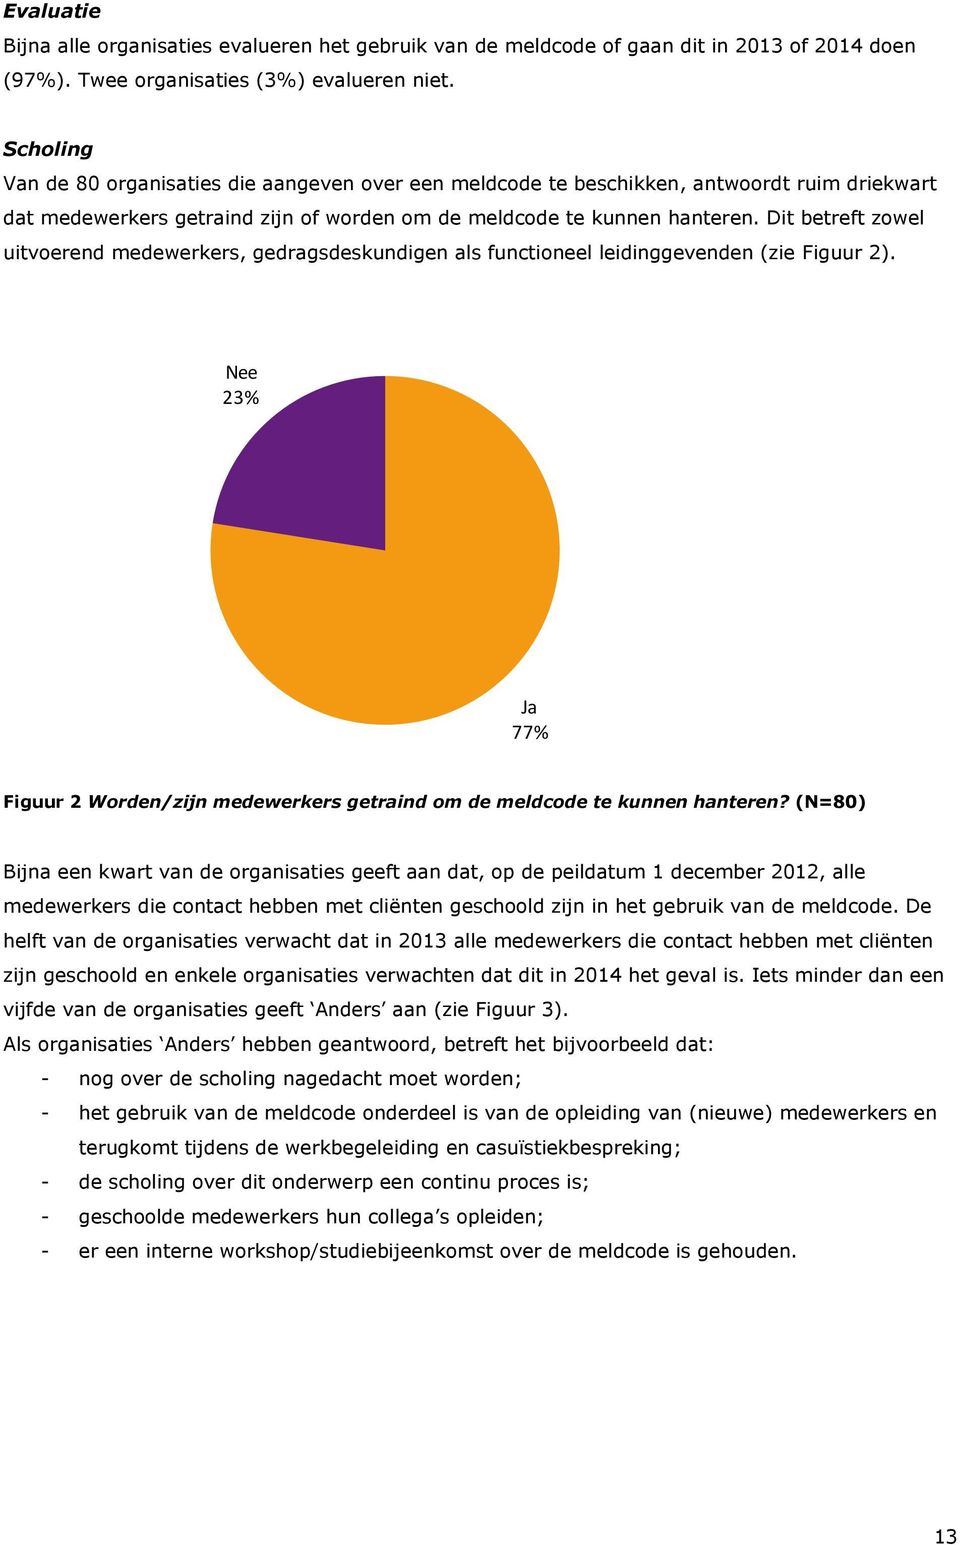 Dit betreft zowel uitvoerend medewerkers, gedragsdeskundigen als functioneel leidinggevenden (zie Figuur 2). Nee 23% Ja 77% Figuur 2 Worden/zijn medewerkers getraind om de meldcode te kunnen hanteren?